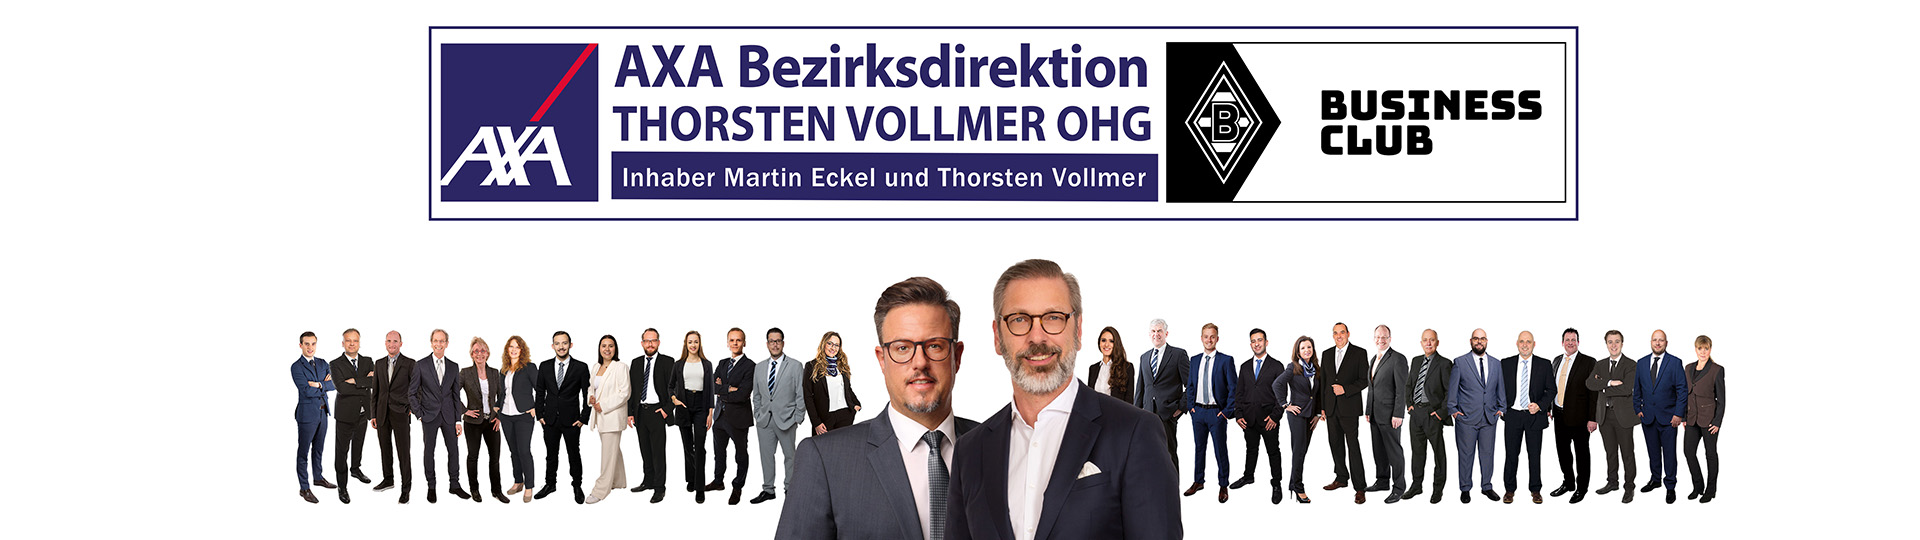 AXA Bezirksdirektion in Vellmar Thorsten Vollmer OHG aus Vellmar